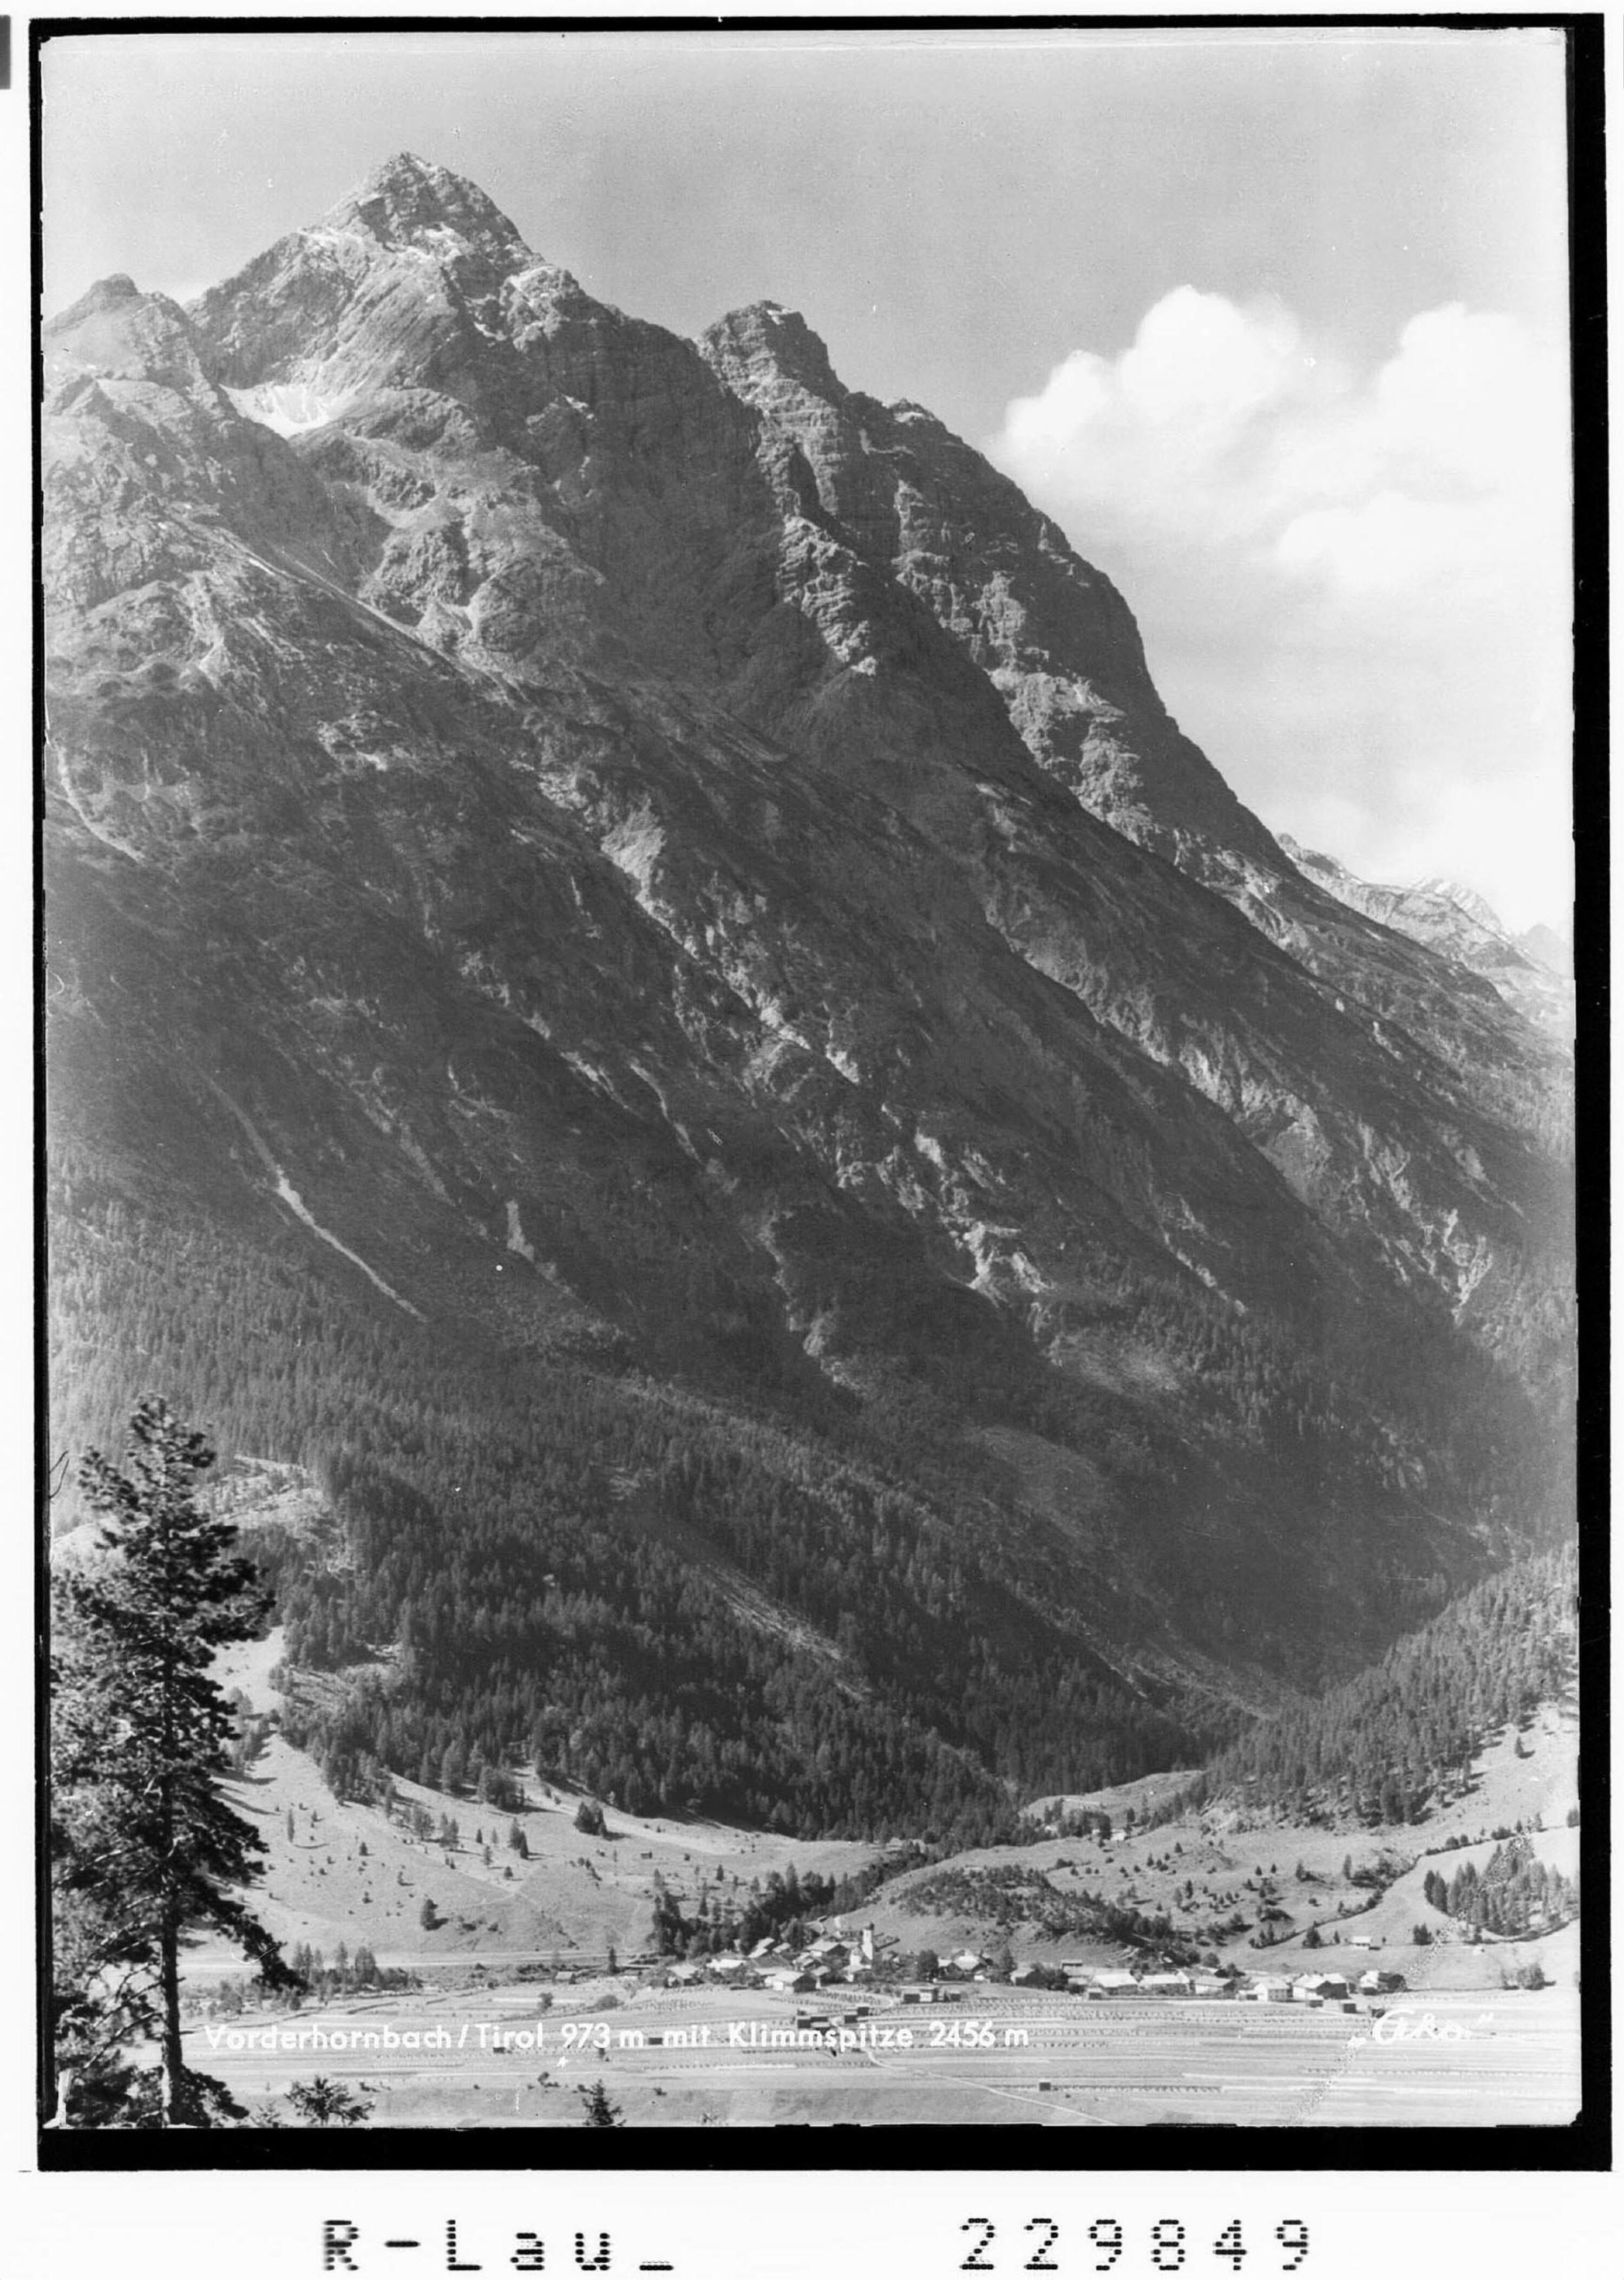 Vorderhornbach / Tirol 973 m mit Klimmspitze 2456 m></div>


    <hr>
    <div class=